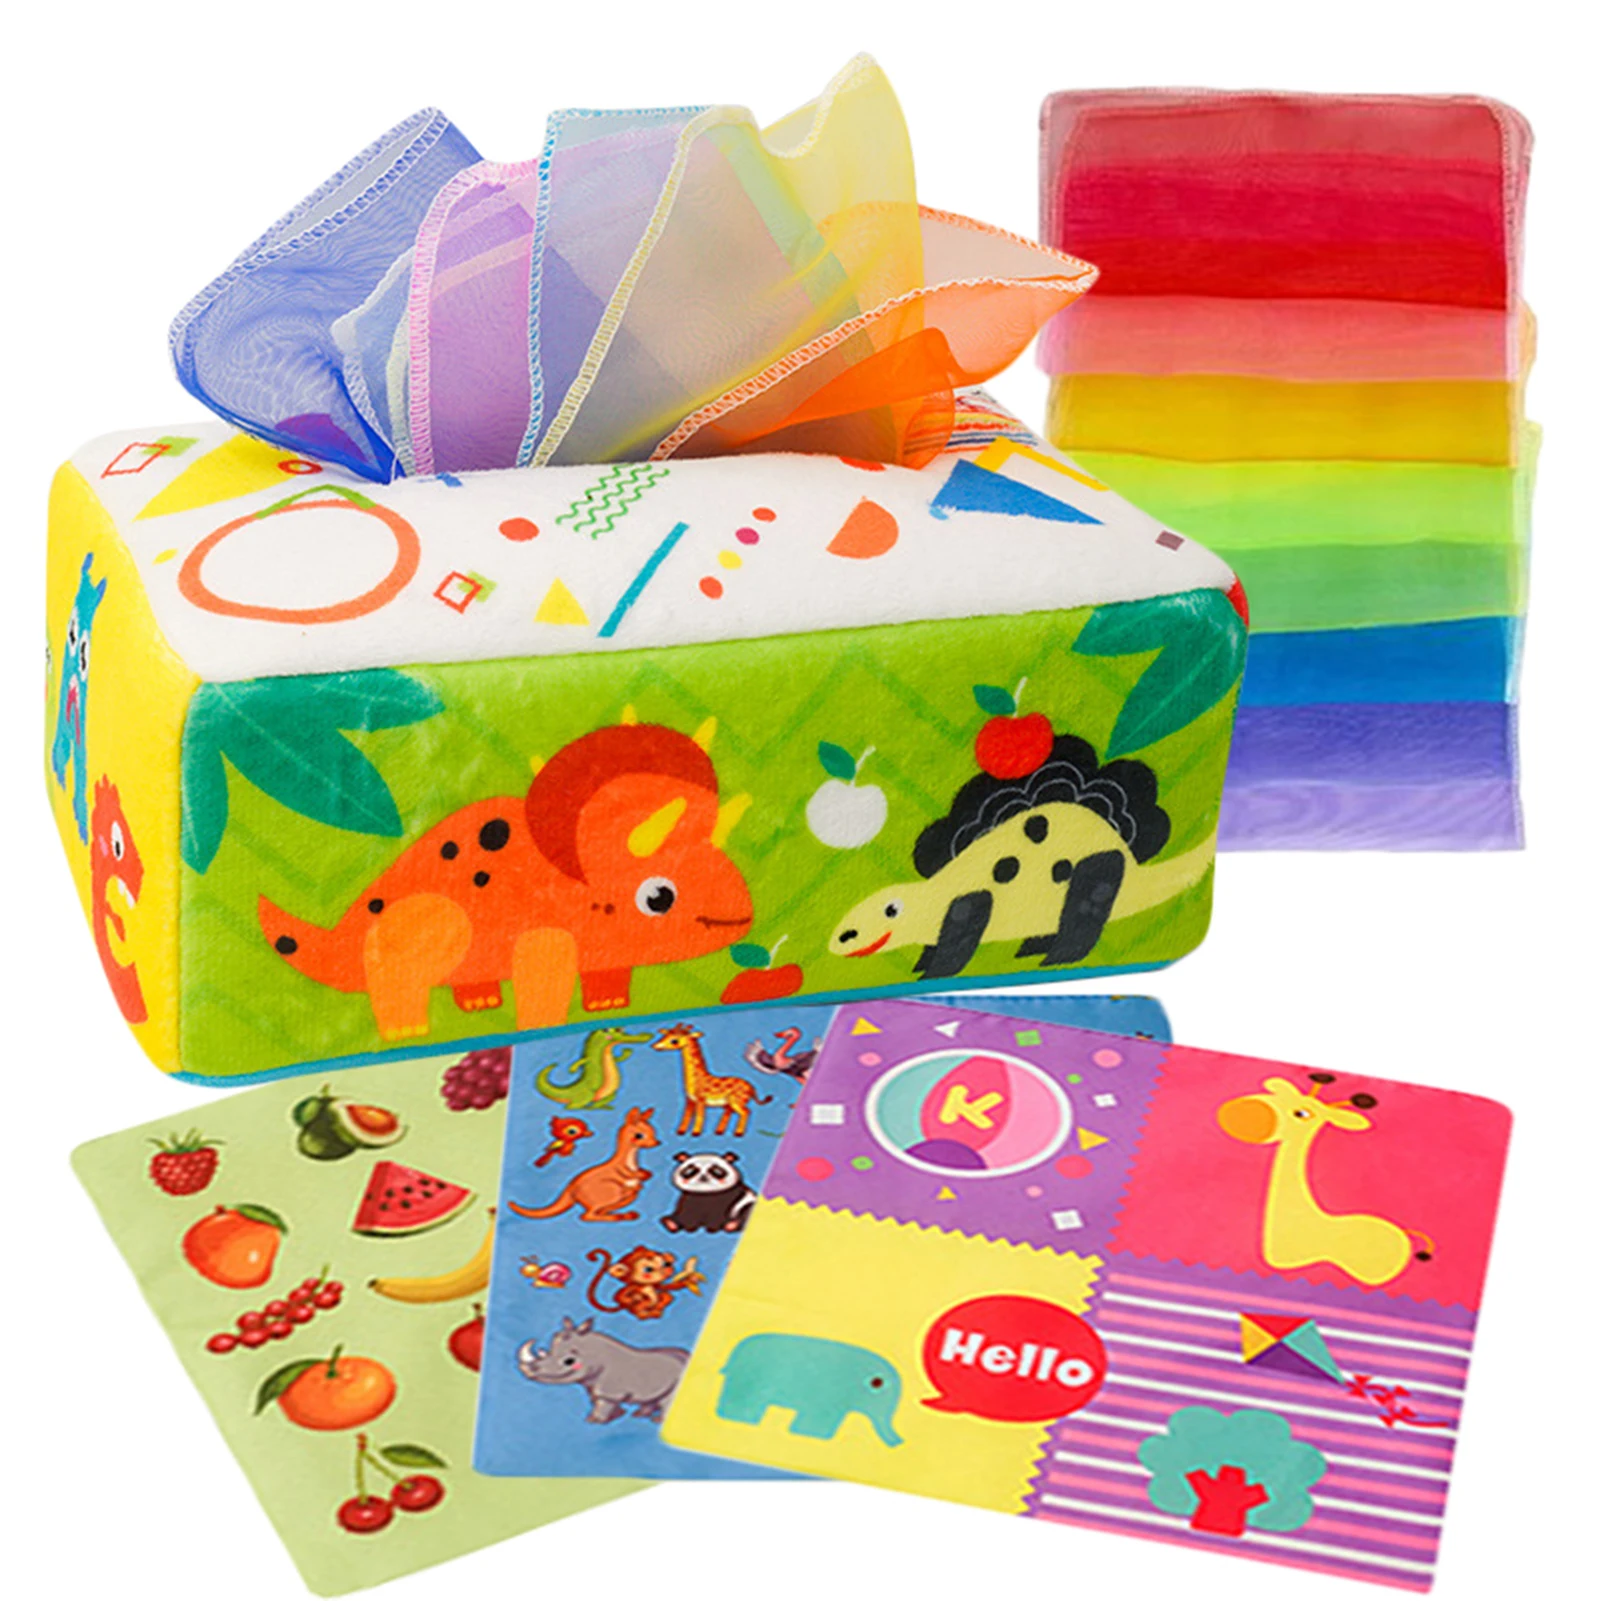 

Коробка для детских салфеток безопасная мягкая сенсорная игрушка мягкие сенсорные игрушки для малышей младенцев Дошкольное обучение